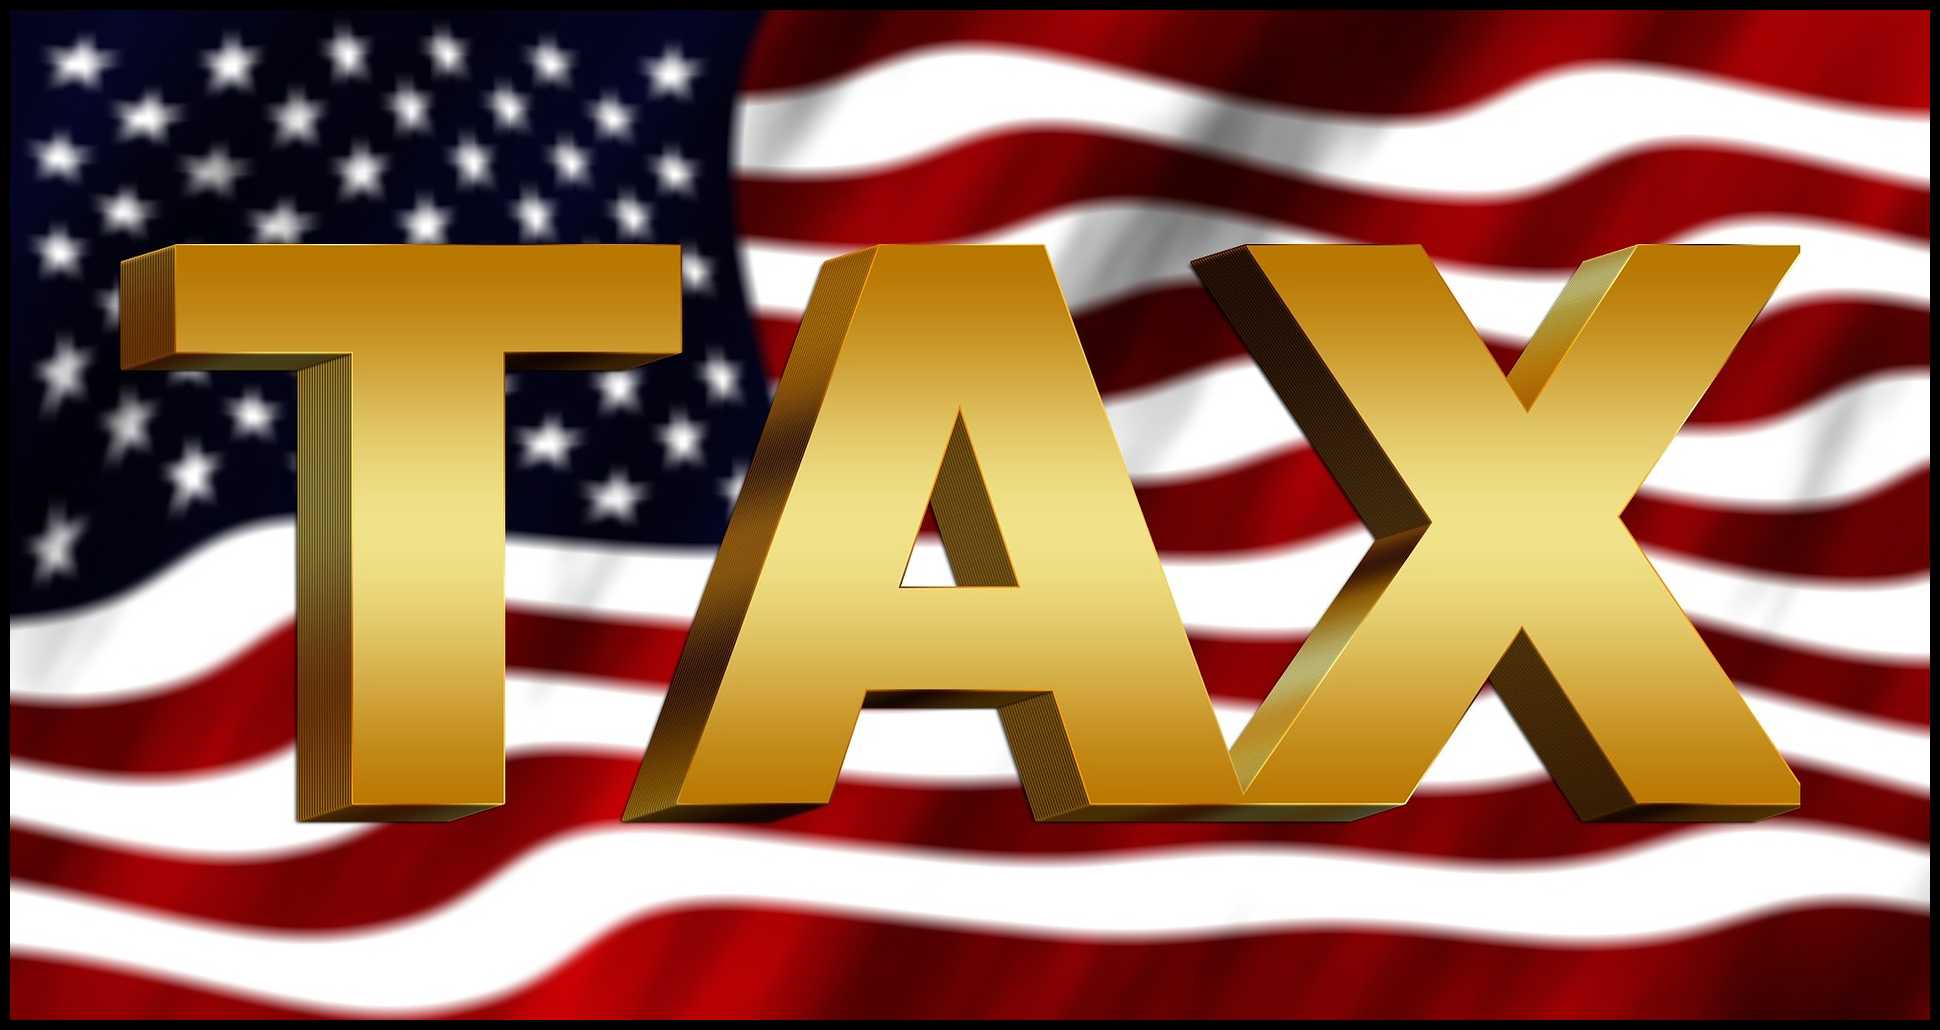 미국 국기를 배경으로 TAX 단어가 그려진 이미지